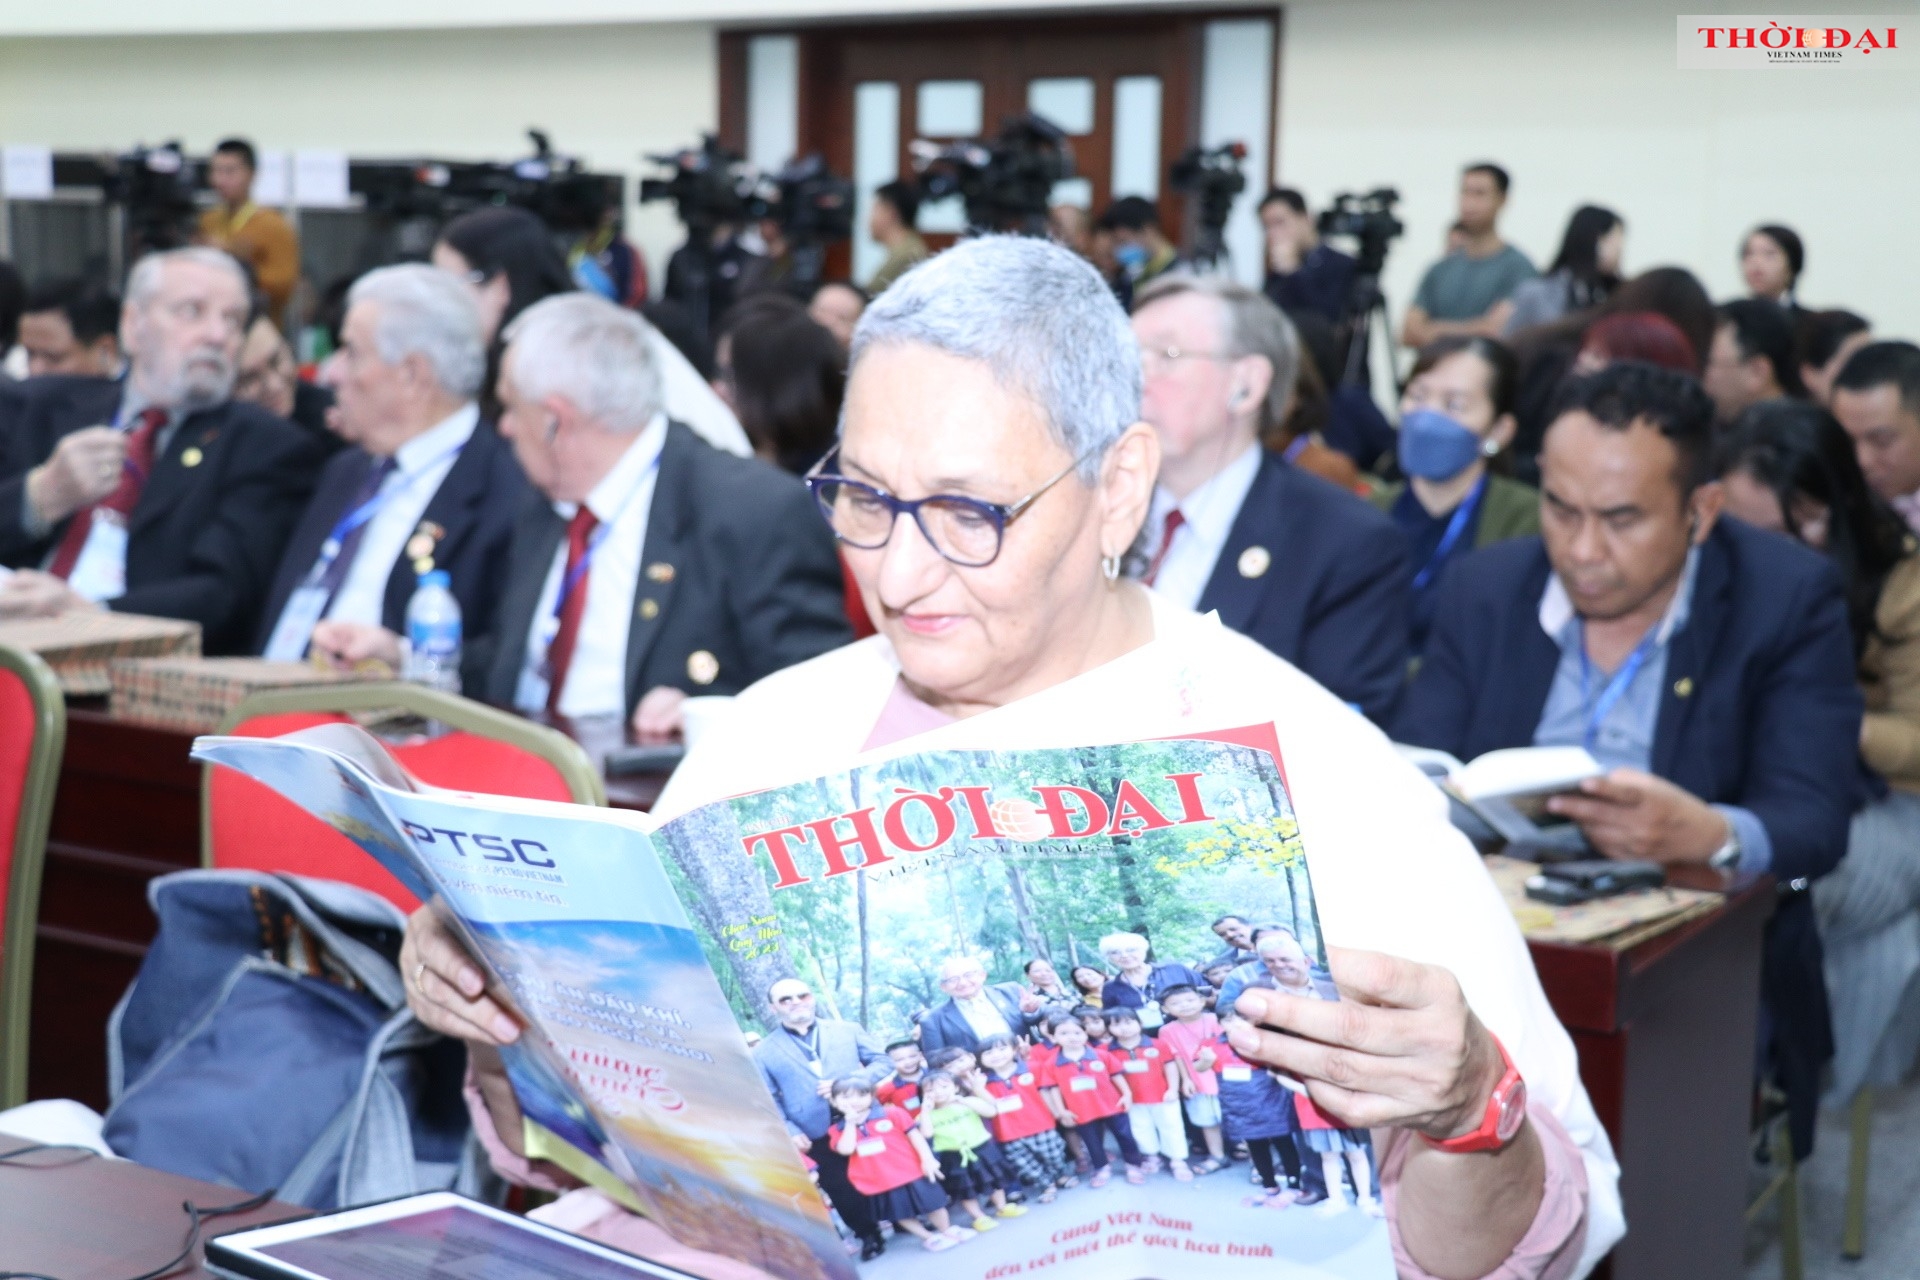 国际民主妇女联合会主席洛雷娜·佩尼亚·门多萨女士阅读了《越南时代》杂志癸卯春节号上的“与越南一起走向和平的世界”的信息。